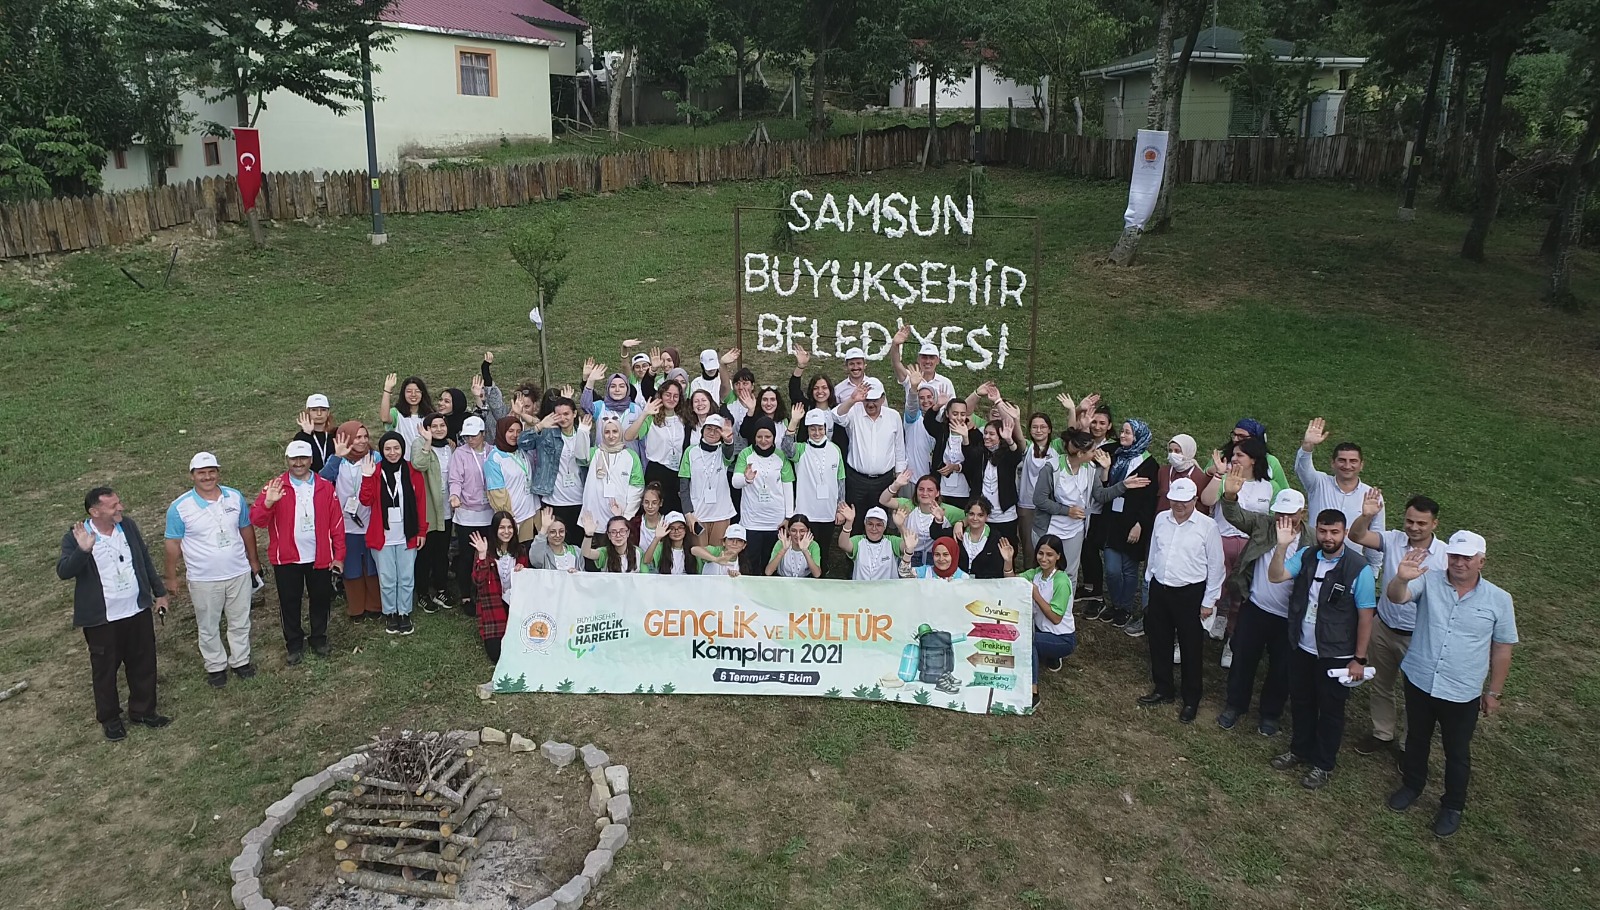  Samsun Büyükşehir Belediyesi Tarafından Düzenlenen “Gençlik Kampı”na Büyük İlgi